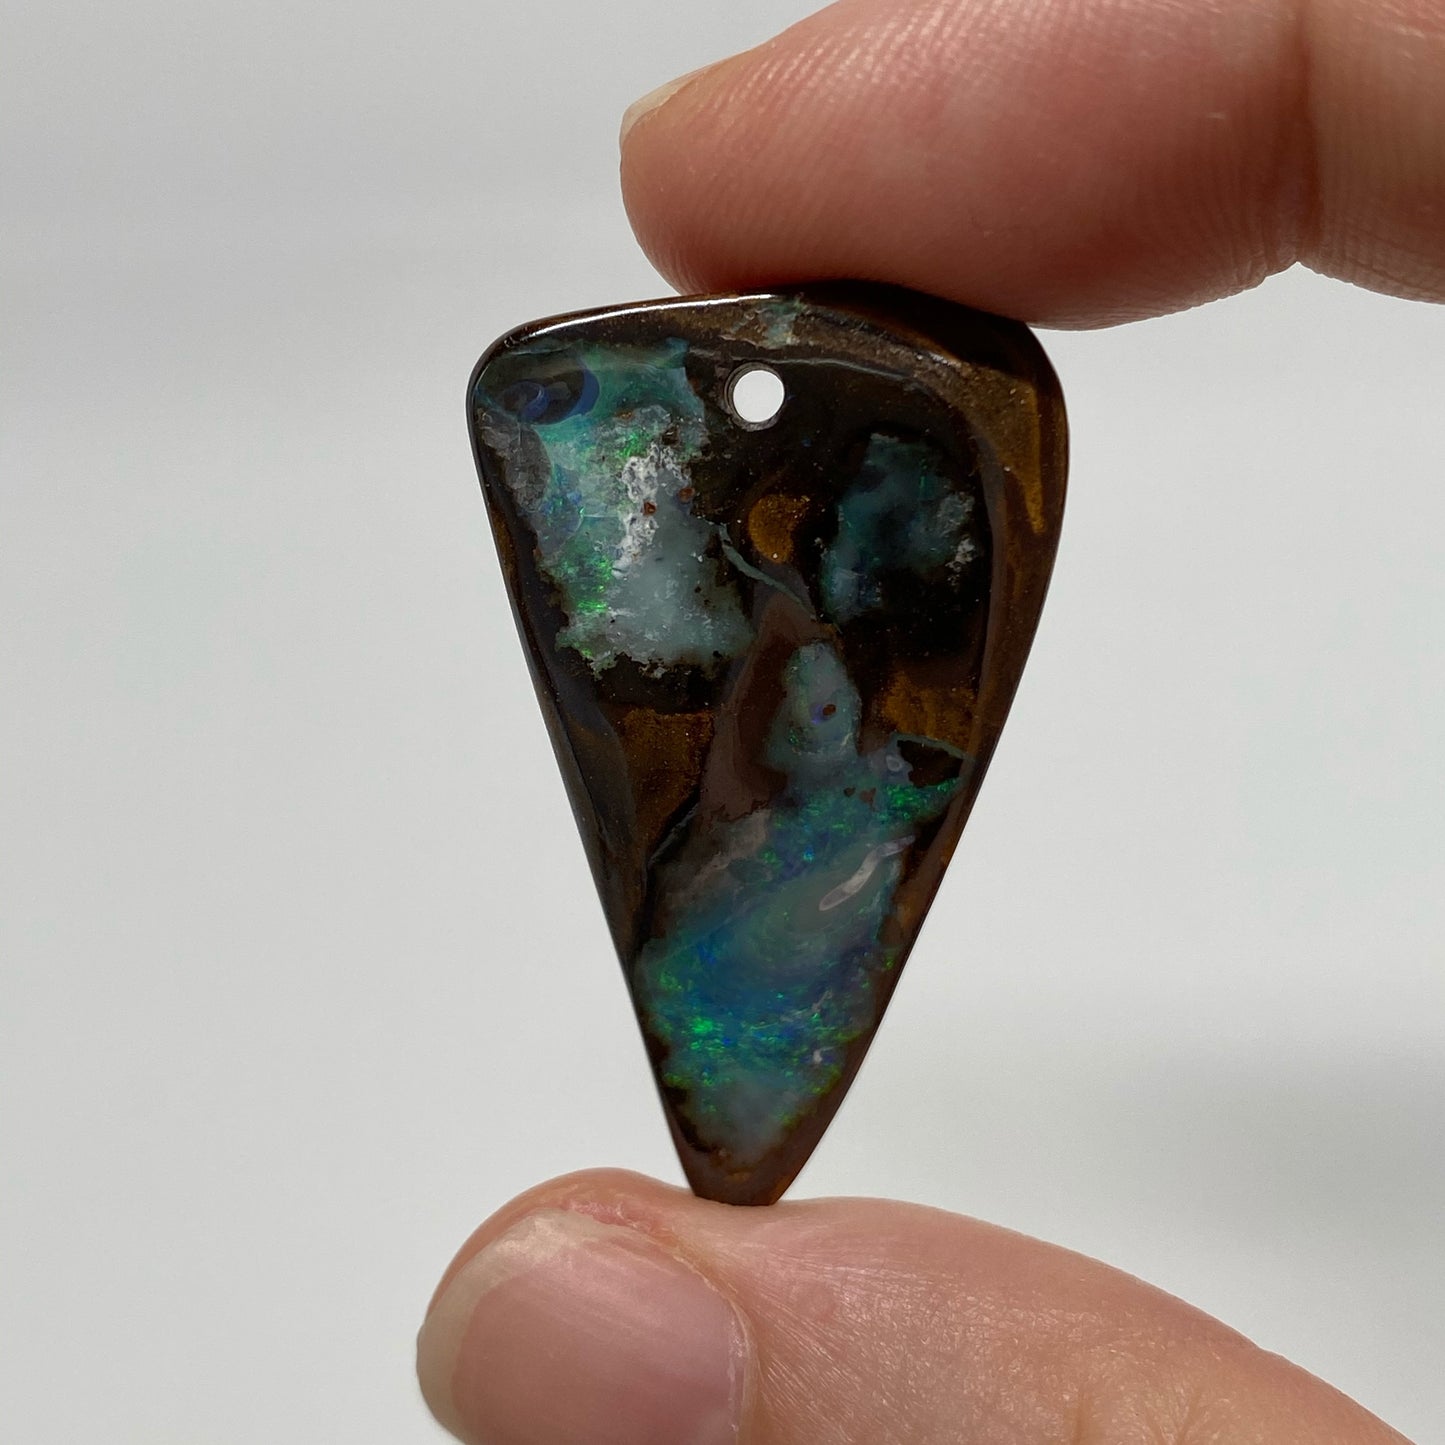 40.46 Ct drilled boulder opal